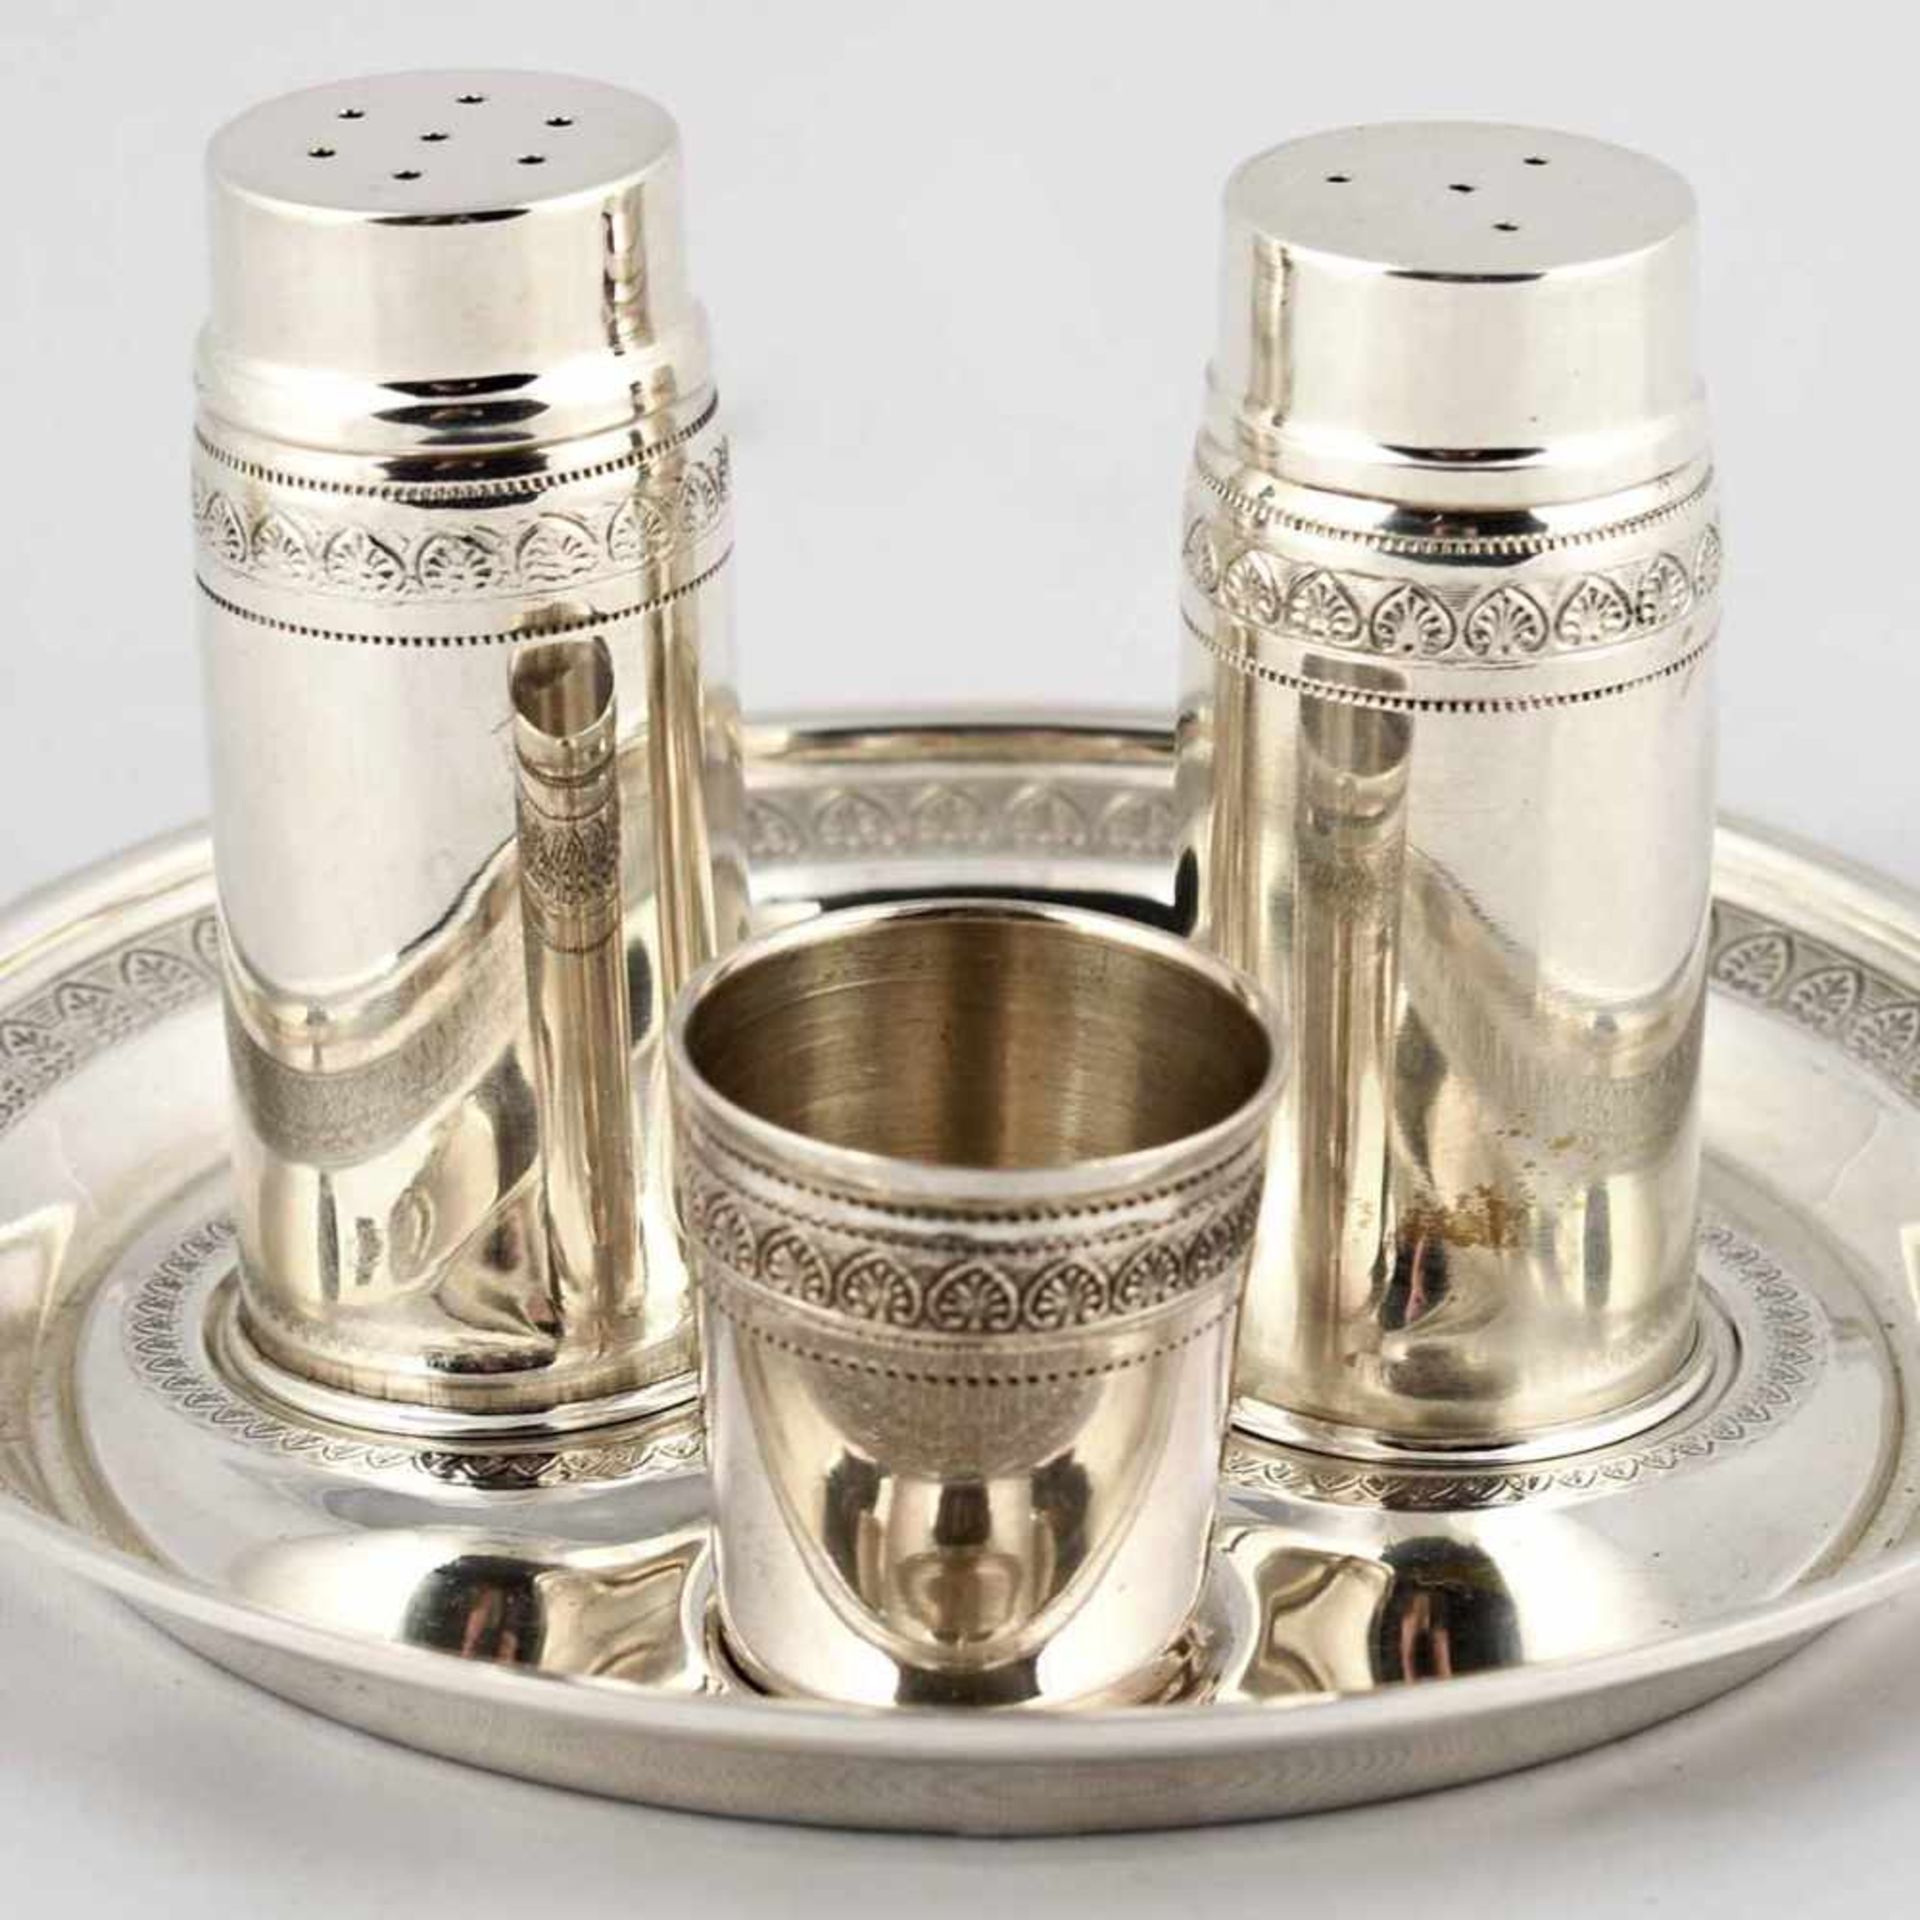 Gewürzmenage Silber 925, Hersteller: Gebrüder Deyhle, Schwäbisch Gmünd, bestehend aus: je 1 Salz-